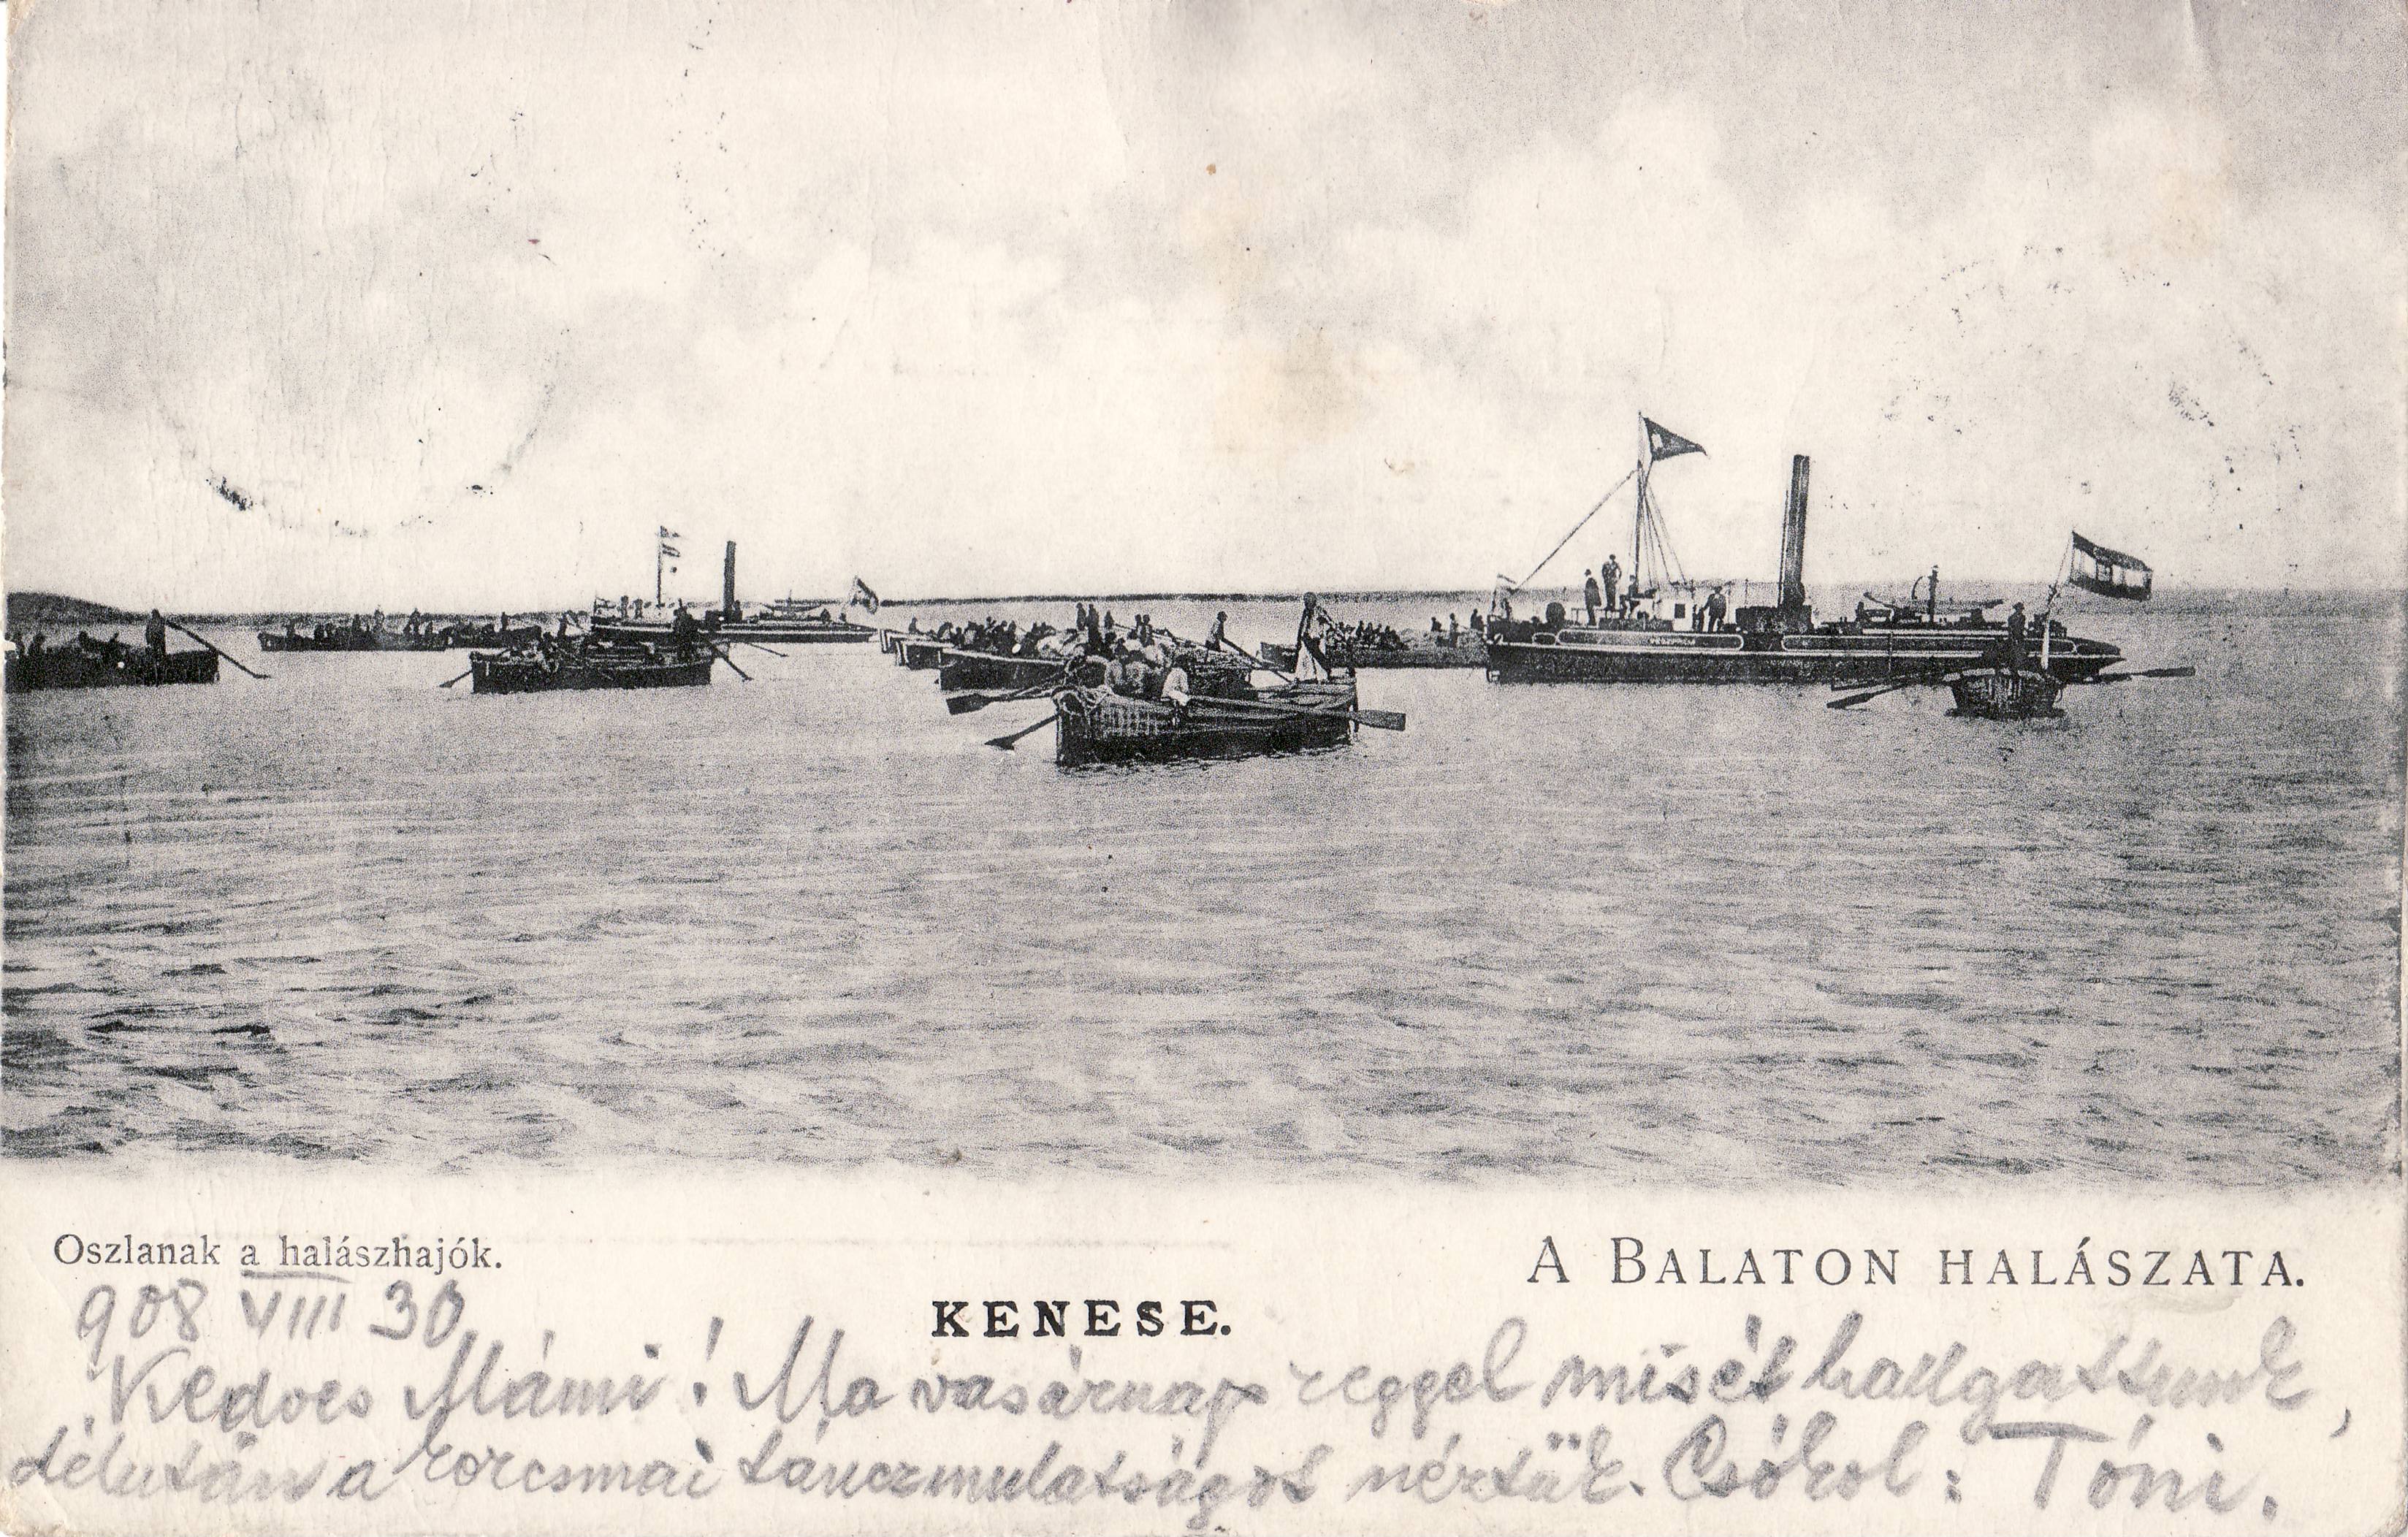 A Balaton halászata – Oszlanak a halászhajók (Magyar Környezetvédelmi és Vízügyi Múzeum - Duna Múzeum CC BY-NC-SA)